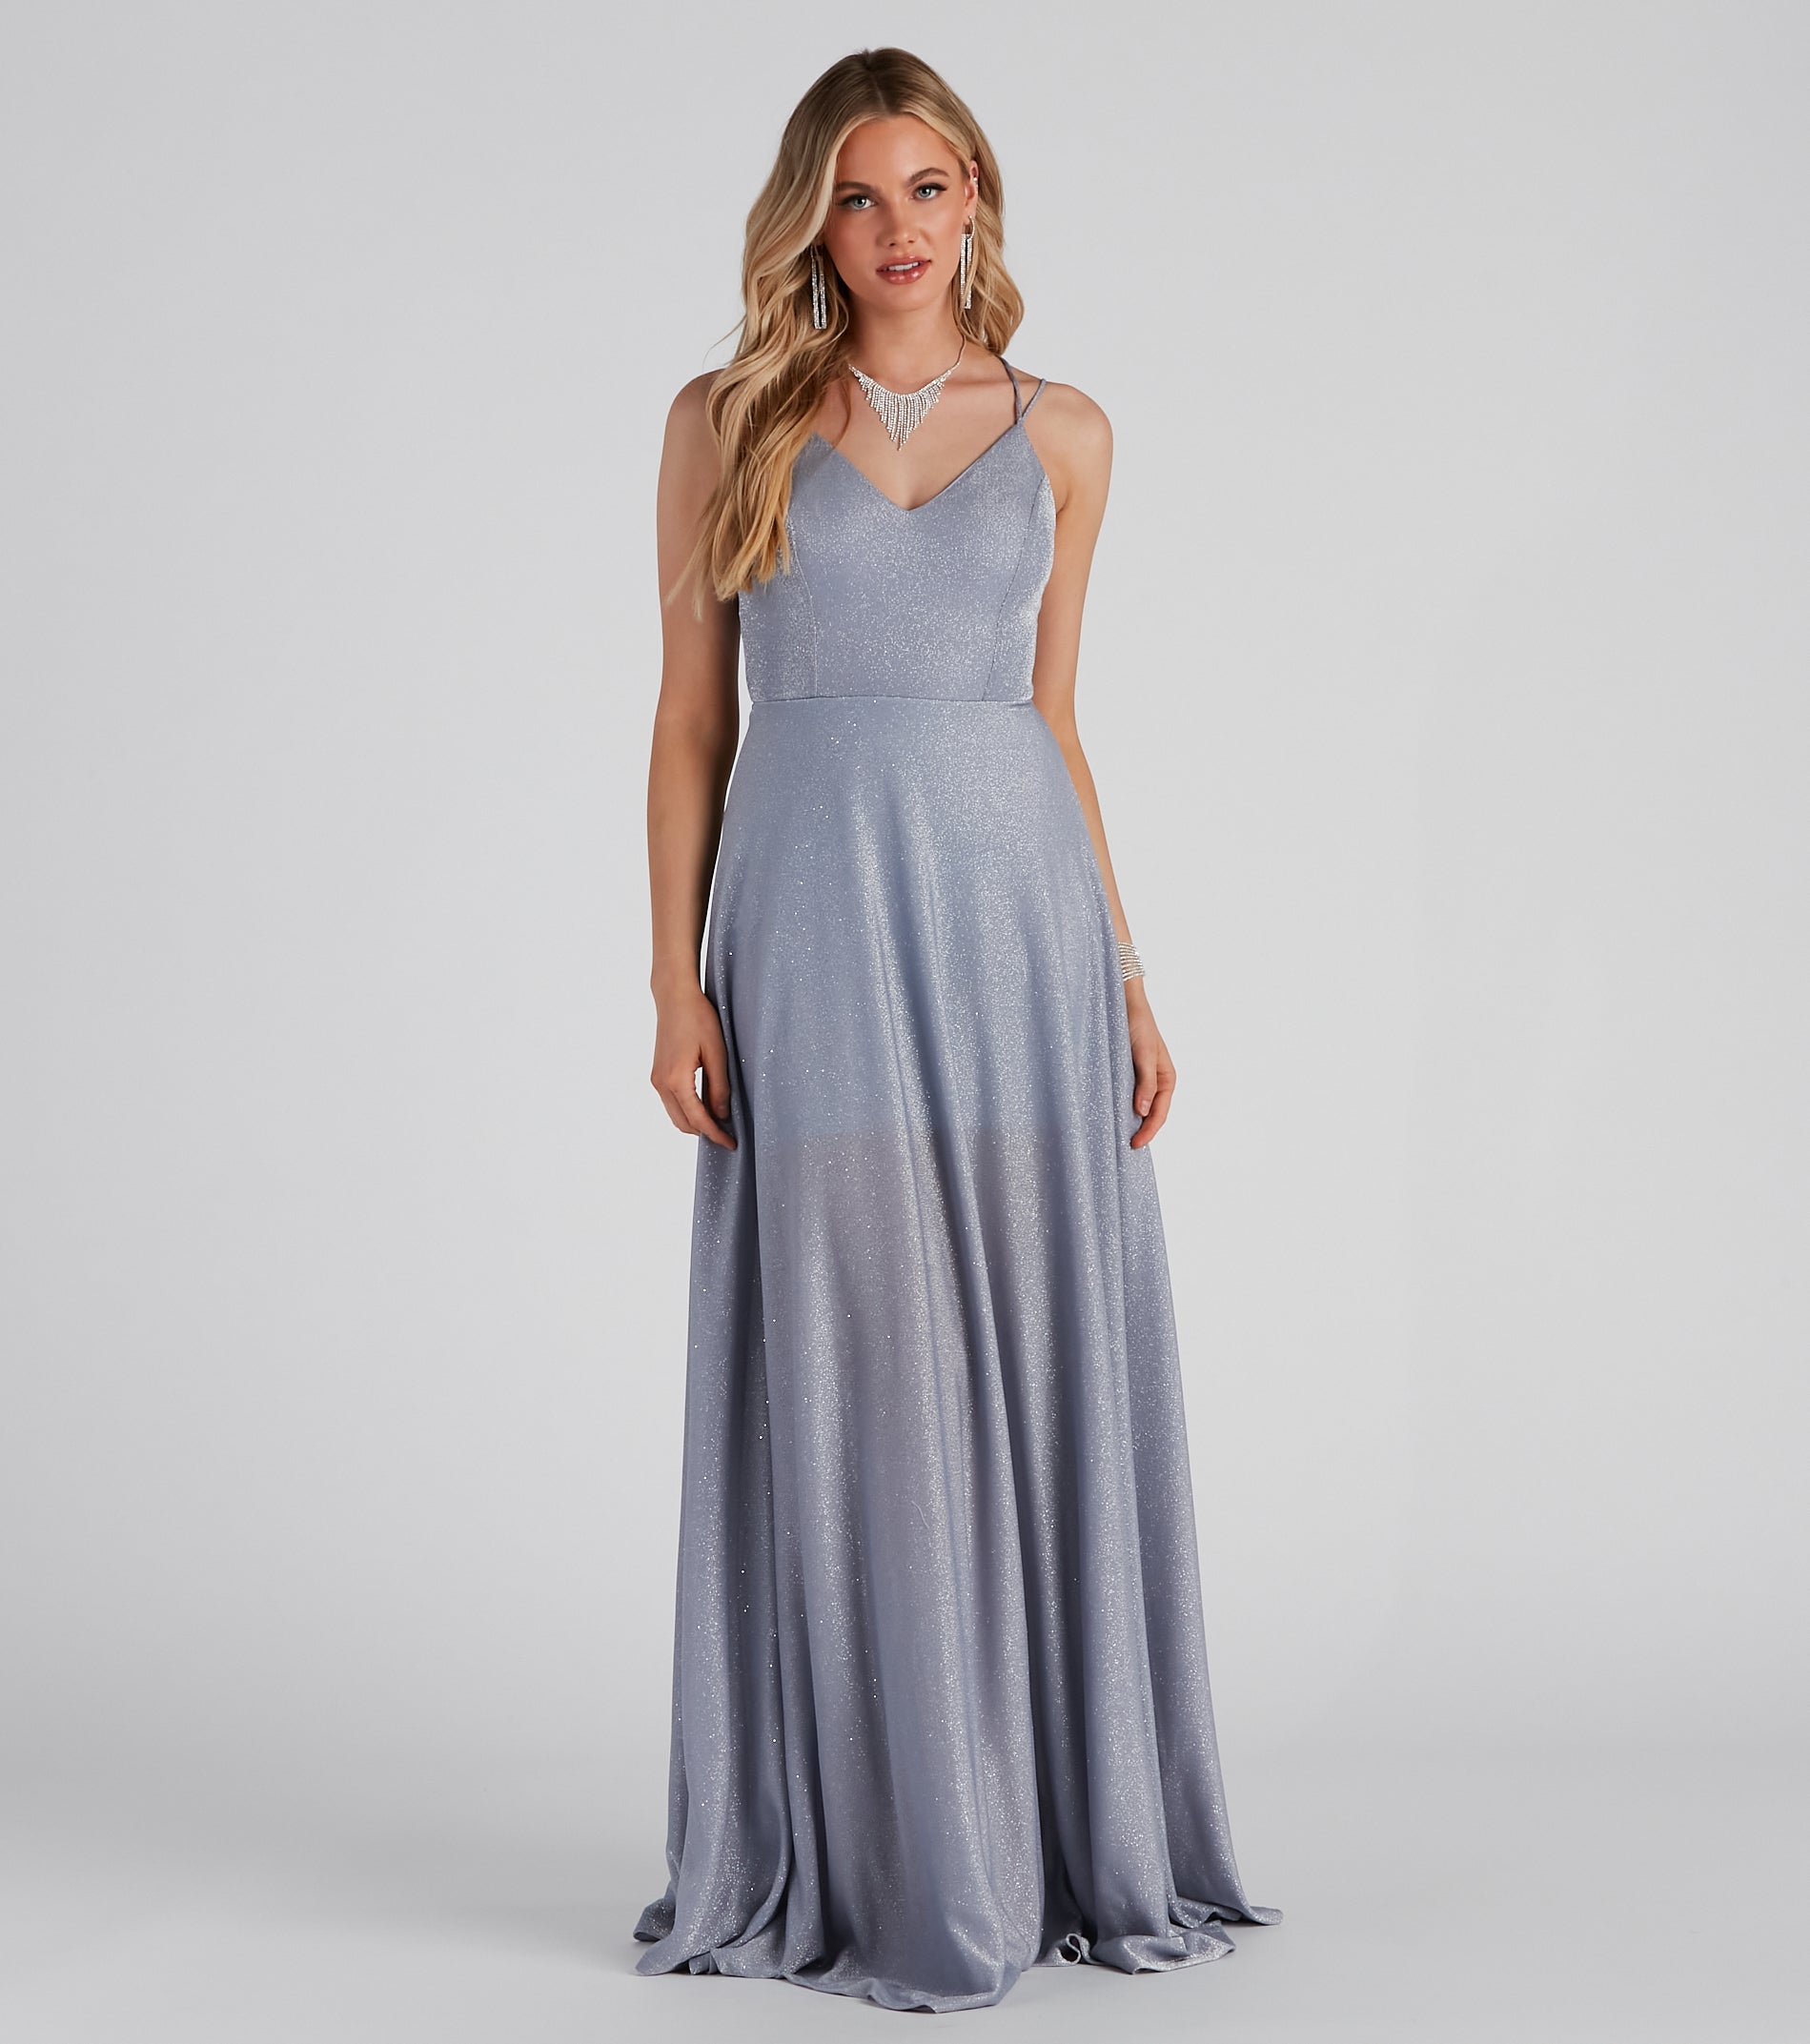 Tianna Formal Glitter A-Line Dress